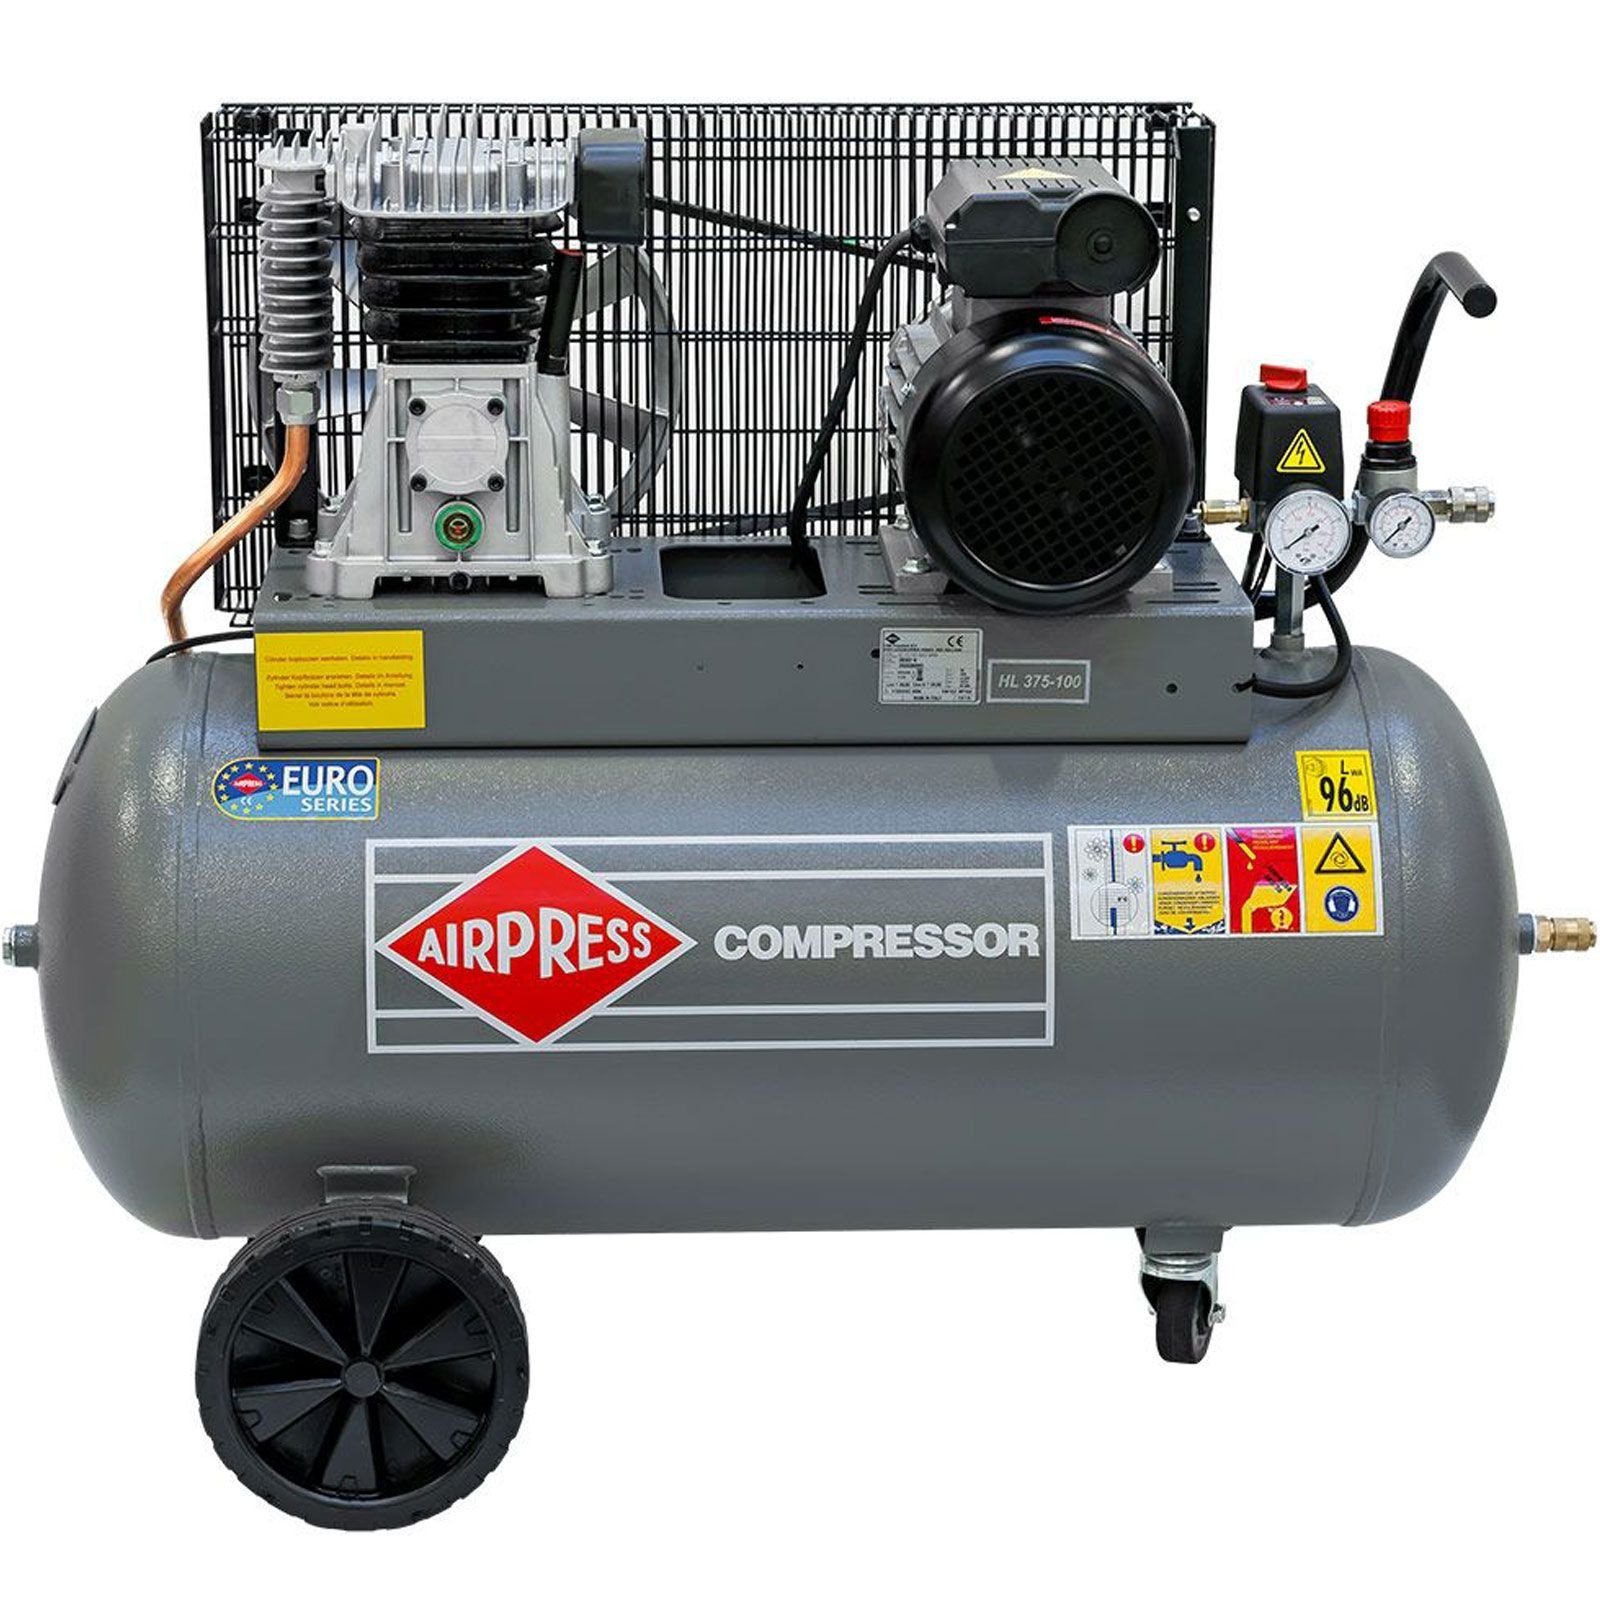 Kompressor max. HL-375-100 PS Typ 10 Druckluft- 90 3,0 90 Liter 360562, 10 Airpress Kompressor Stück bar bar, l, 1